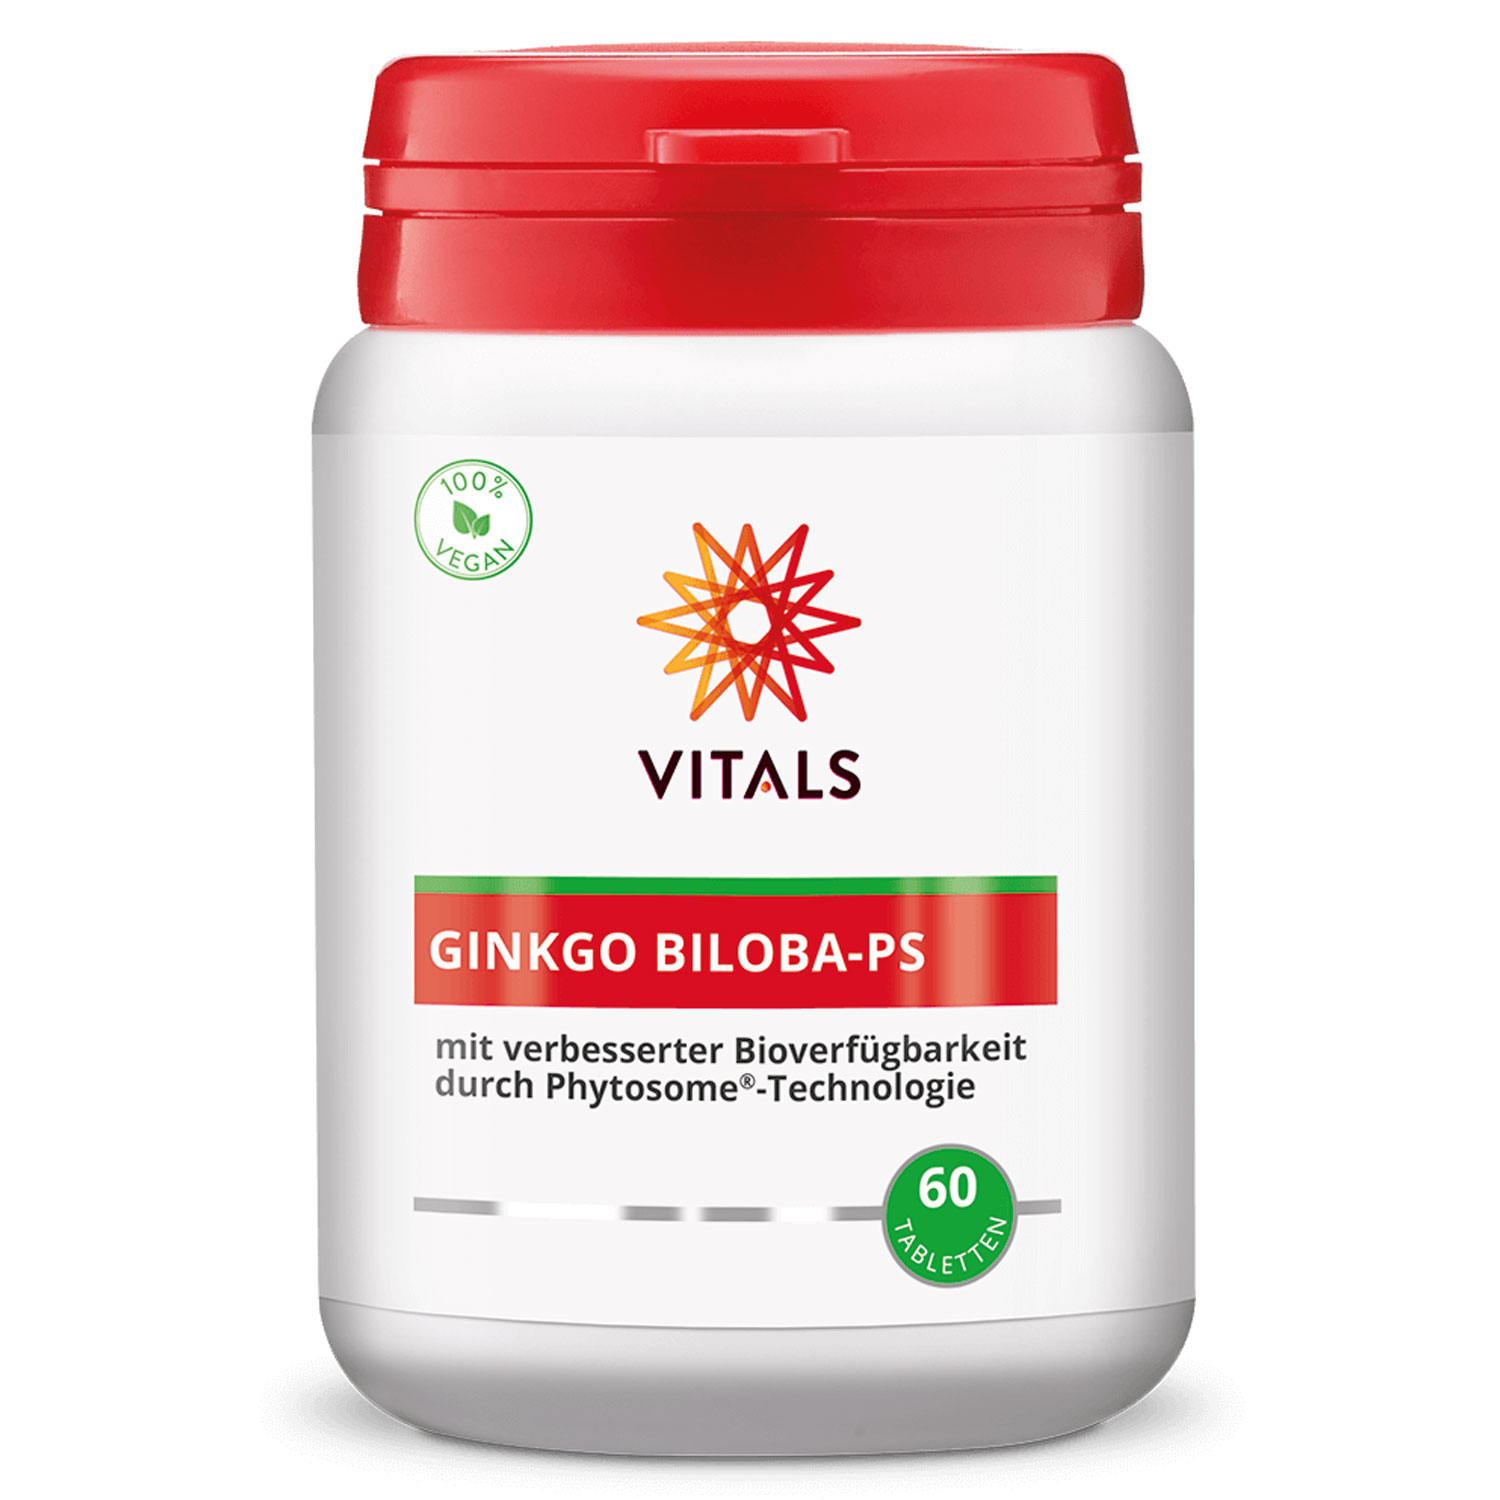 Ginkgo Biloba-PS von Vitals - 60 Tabletten